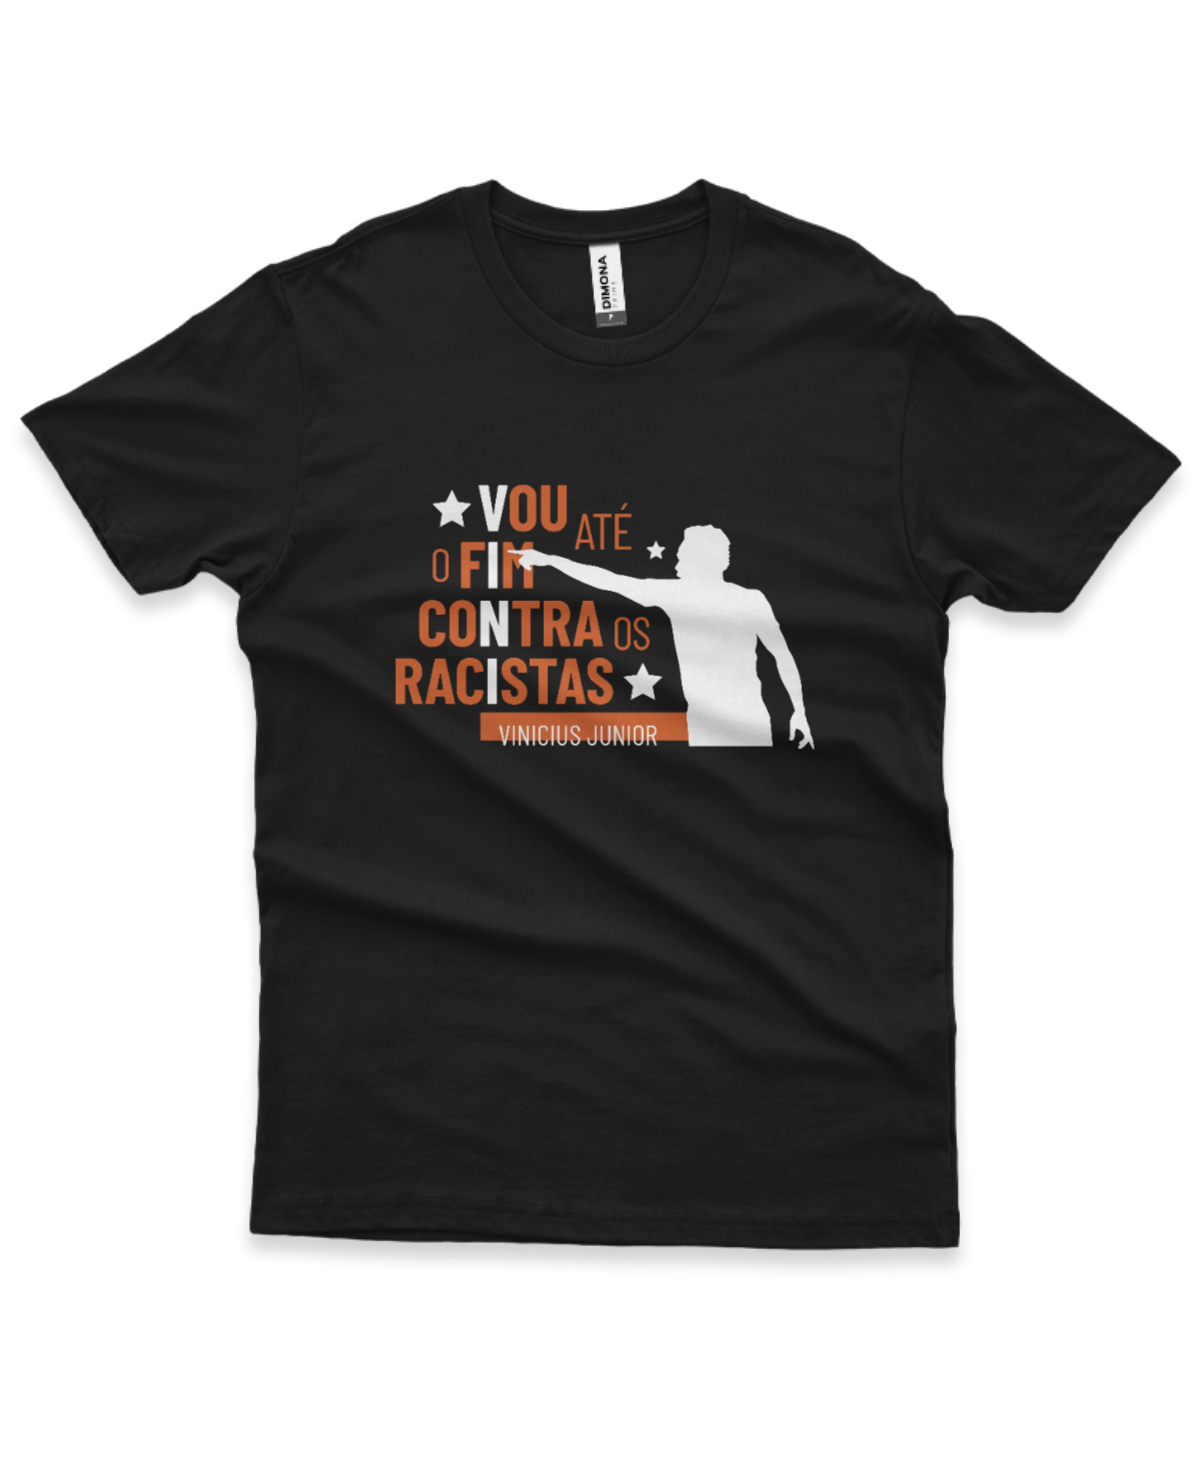 camiseta masculina cor preta com estampa perfil Vini Junior e a frase vou até o fim contra os racistas